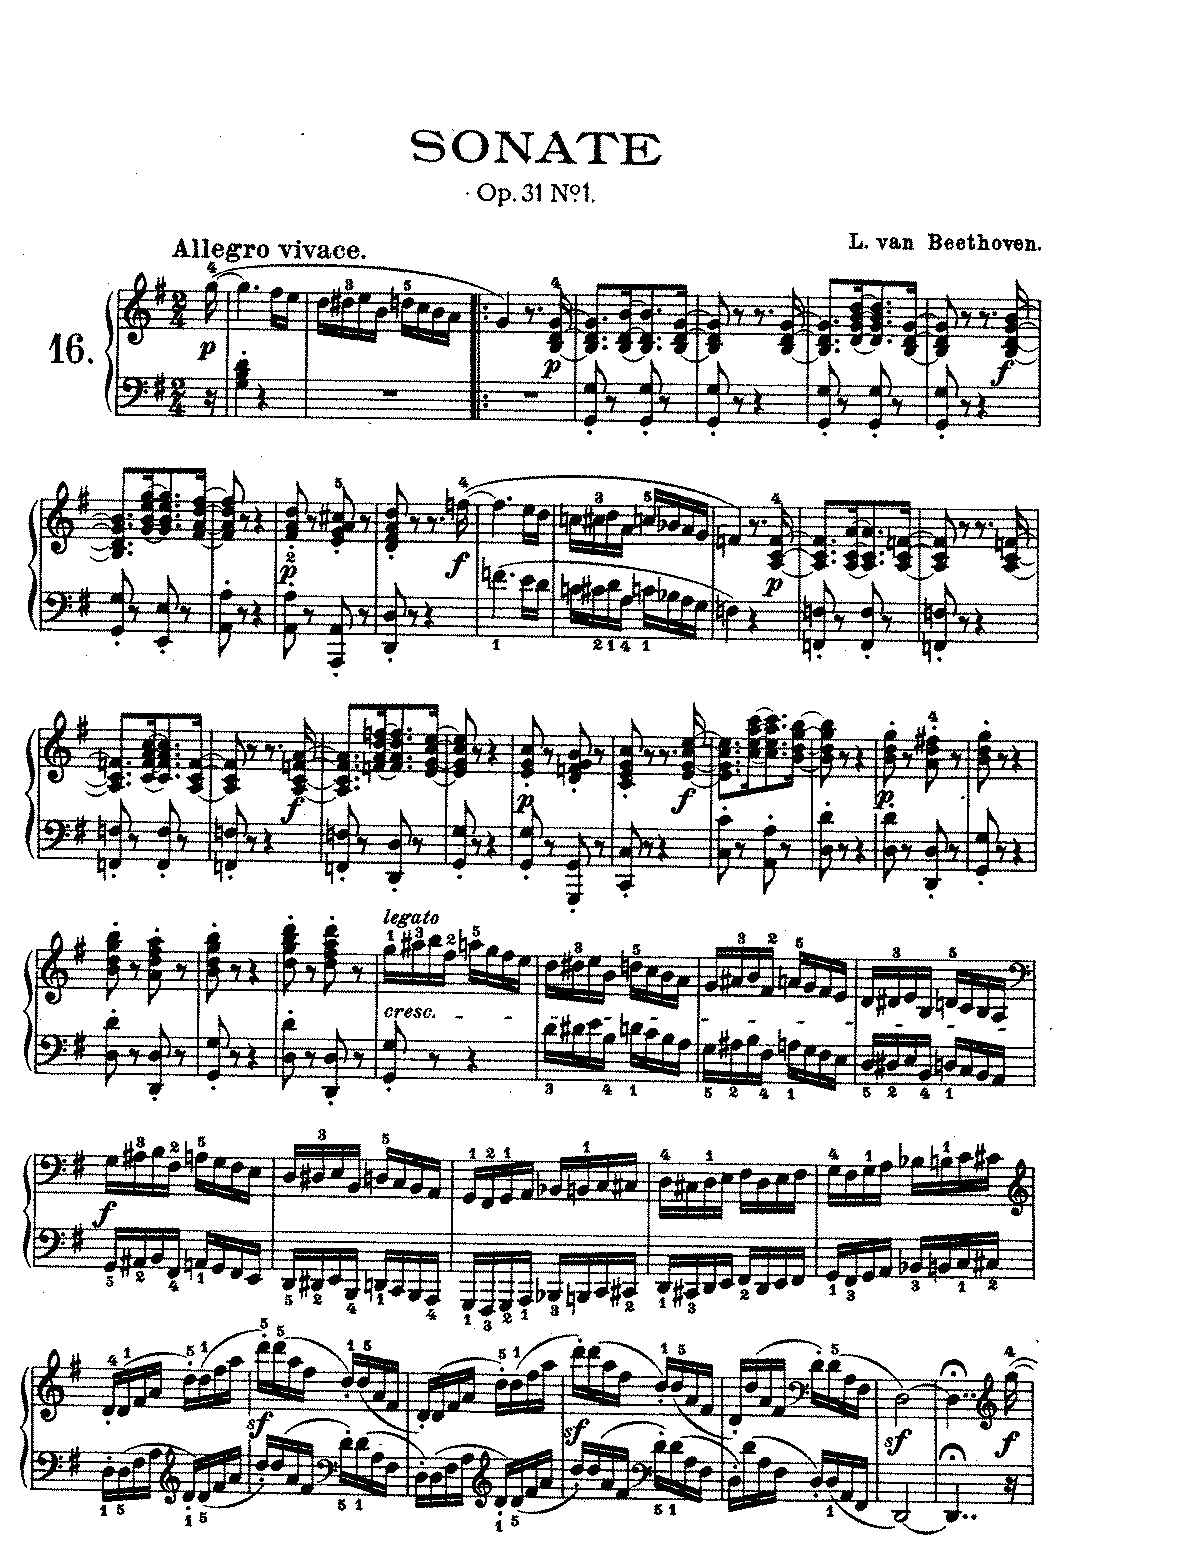 Piano sonata no.16, op.31 no.1 (beethoven, ludwig van)